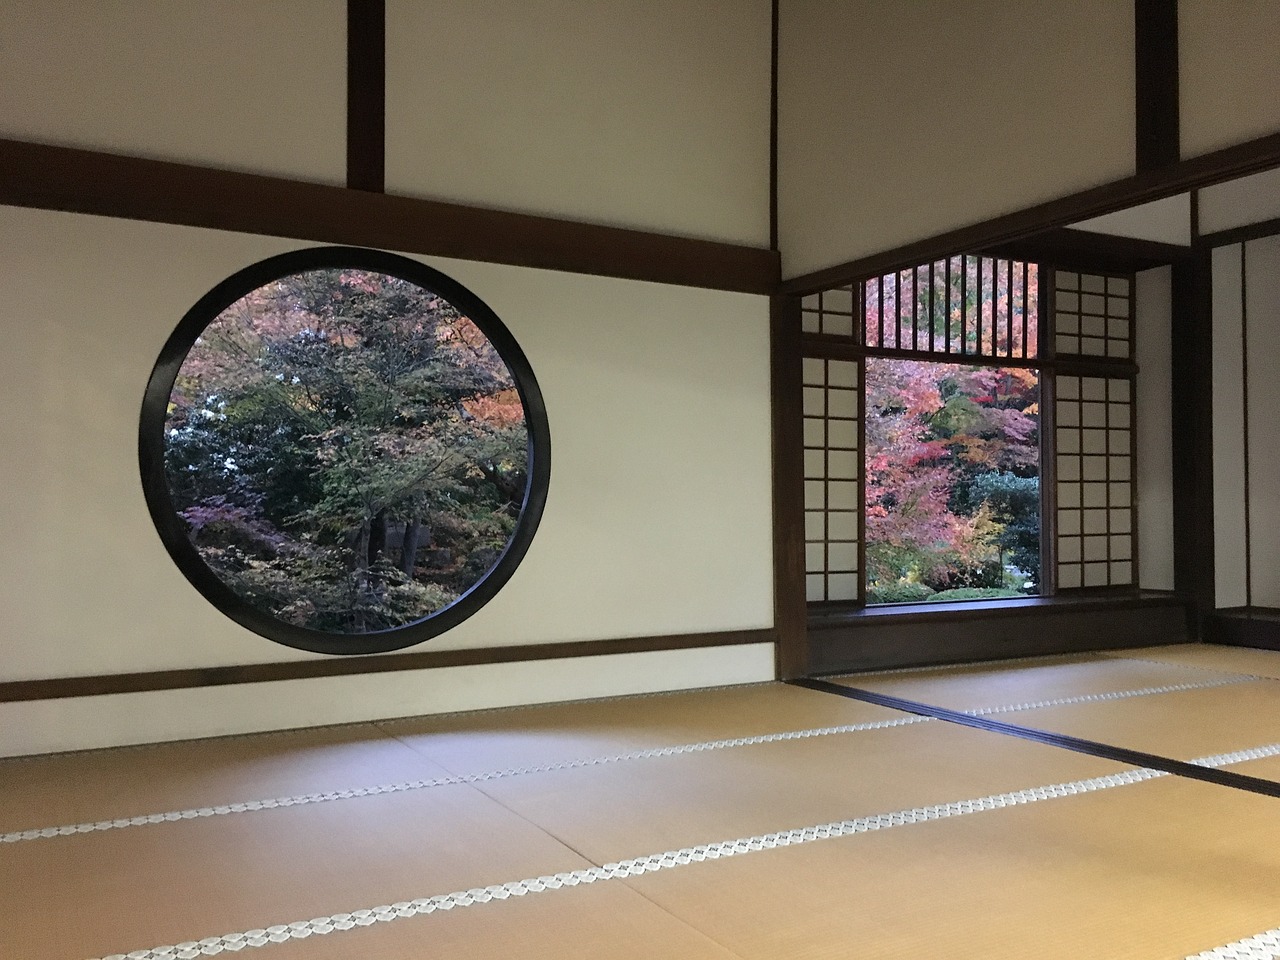 Déco chambre japonaise : comment créer une ambiance zen chez vous ?